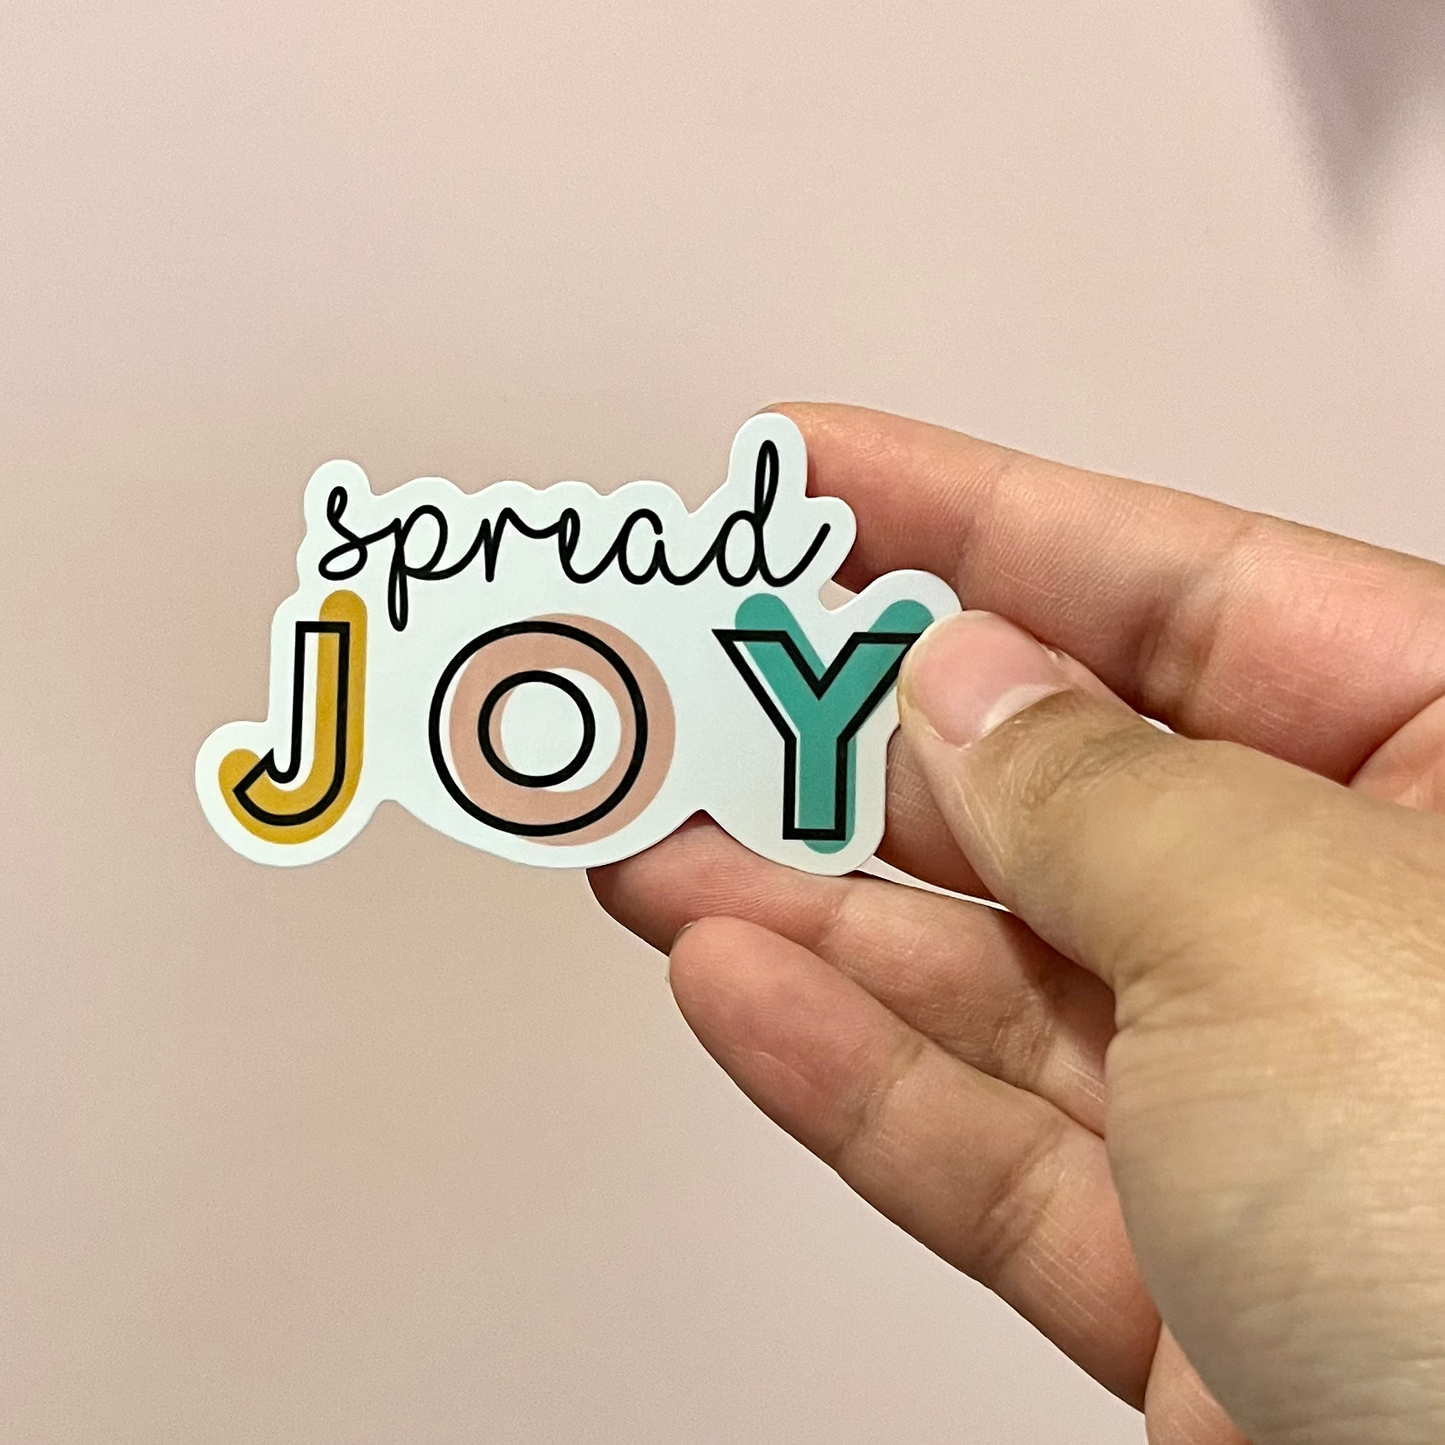 Spread Joy Sticker